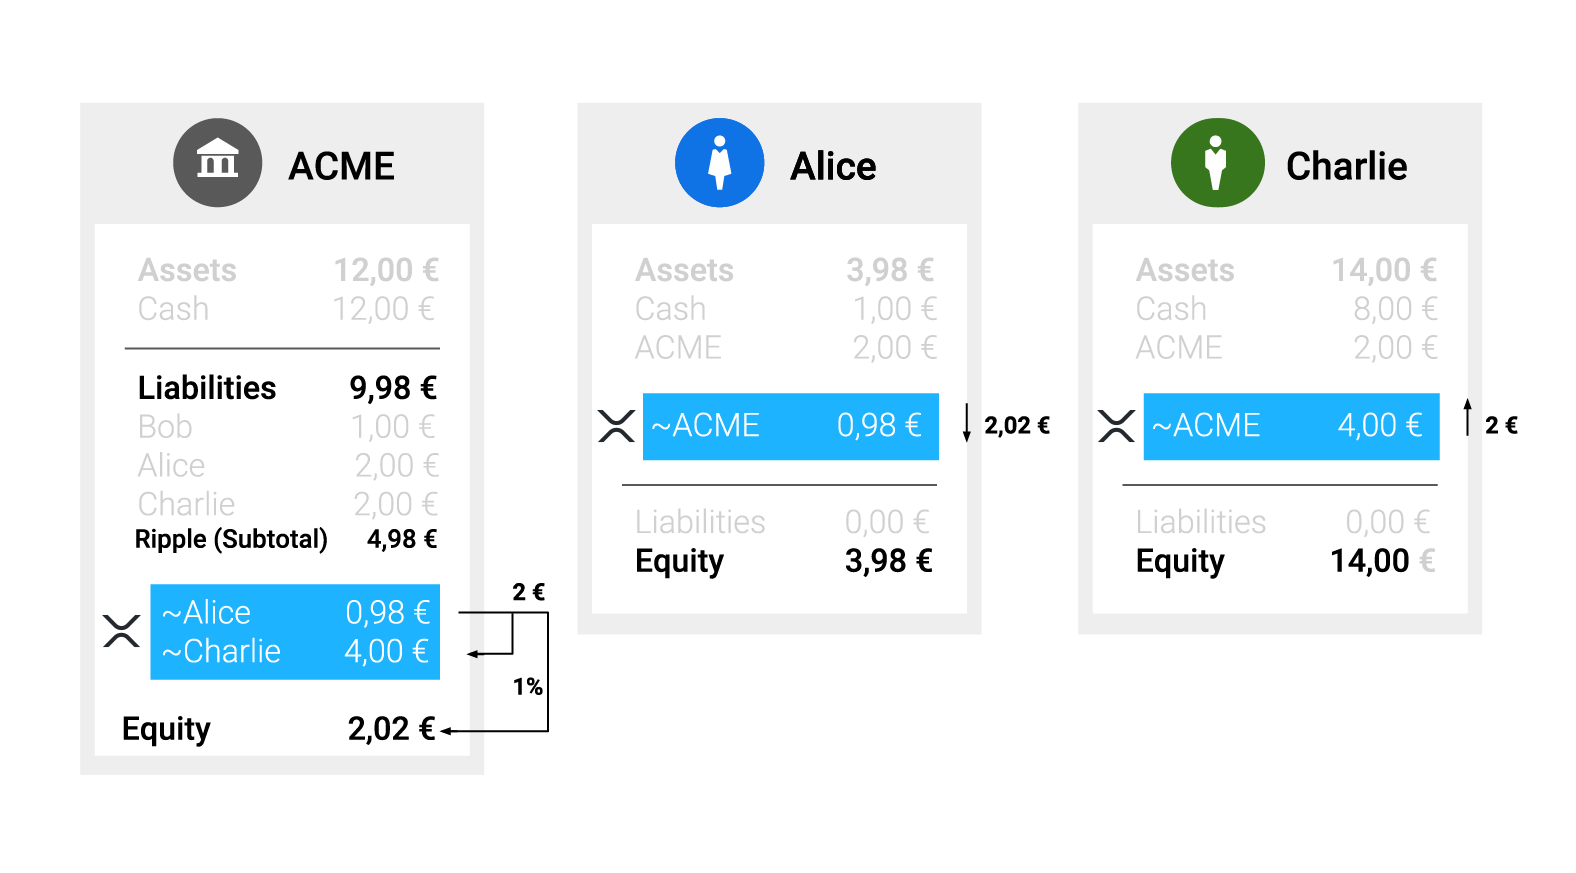 Aliceが2,02€を送金し、Charlieが2,00€を受領し、XRP LedgerでのACMEの負債が0,02€減少します